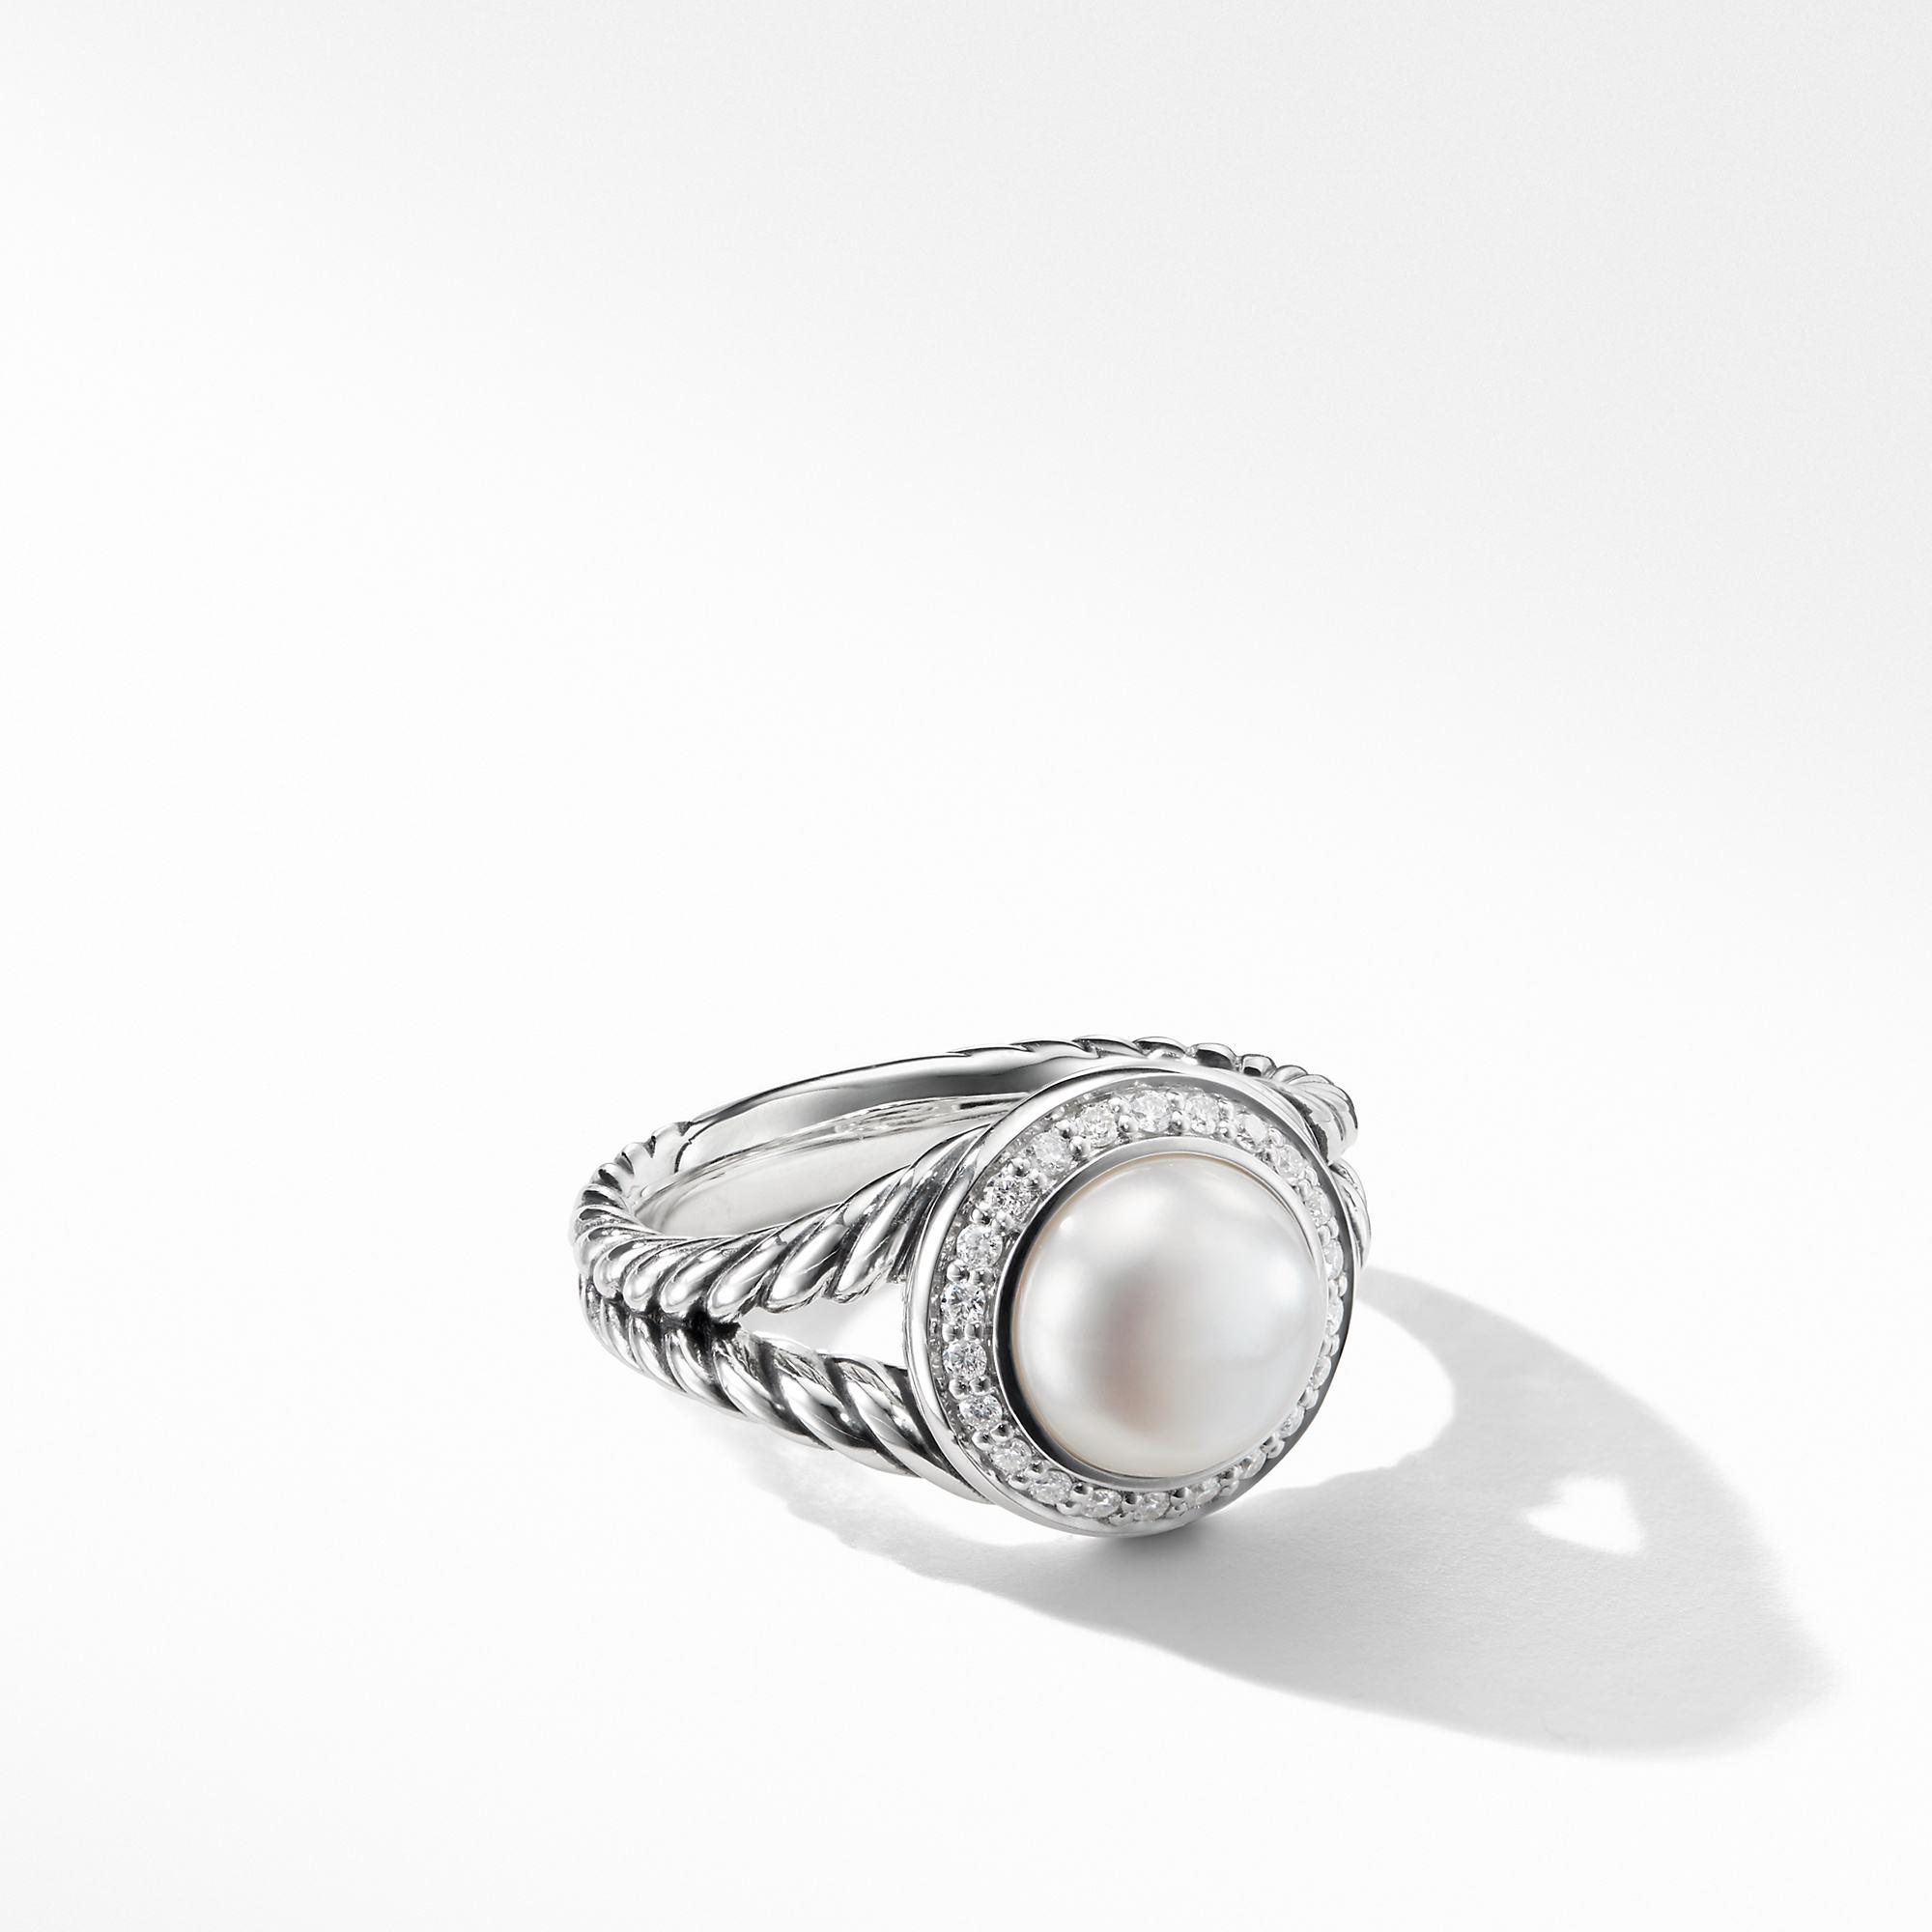 David Yurman Albion Pearl Ring with Diamonds, size 6